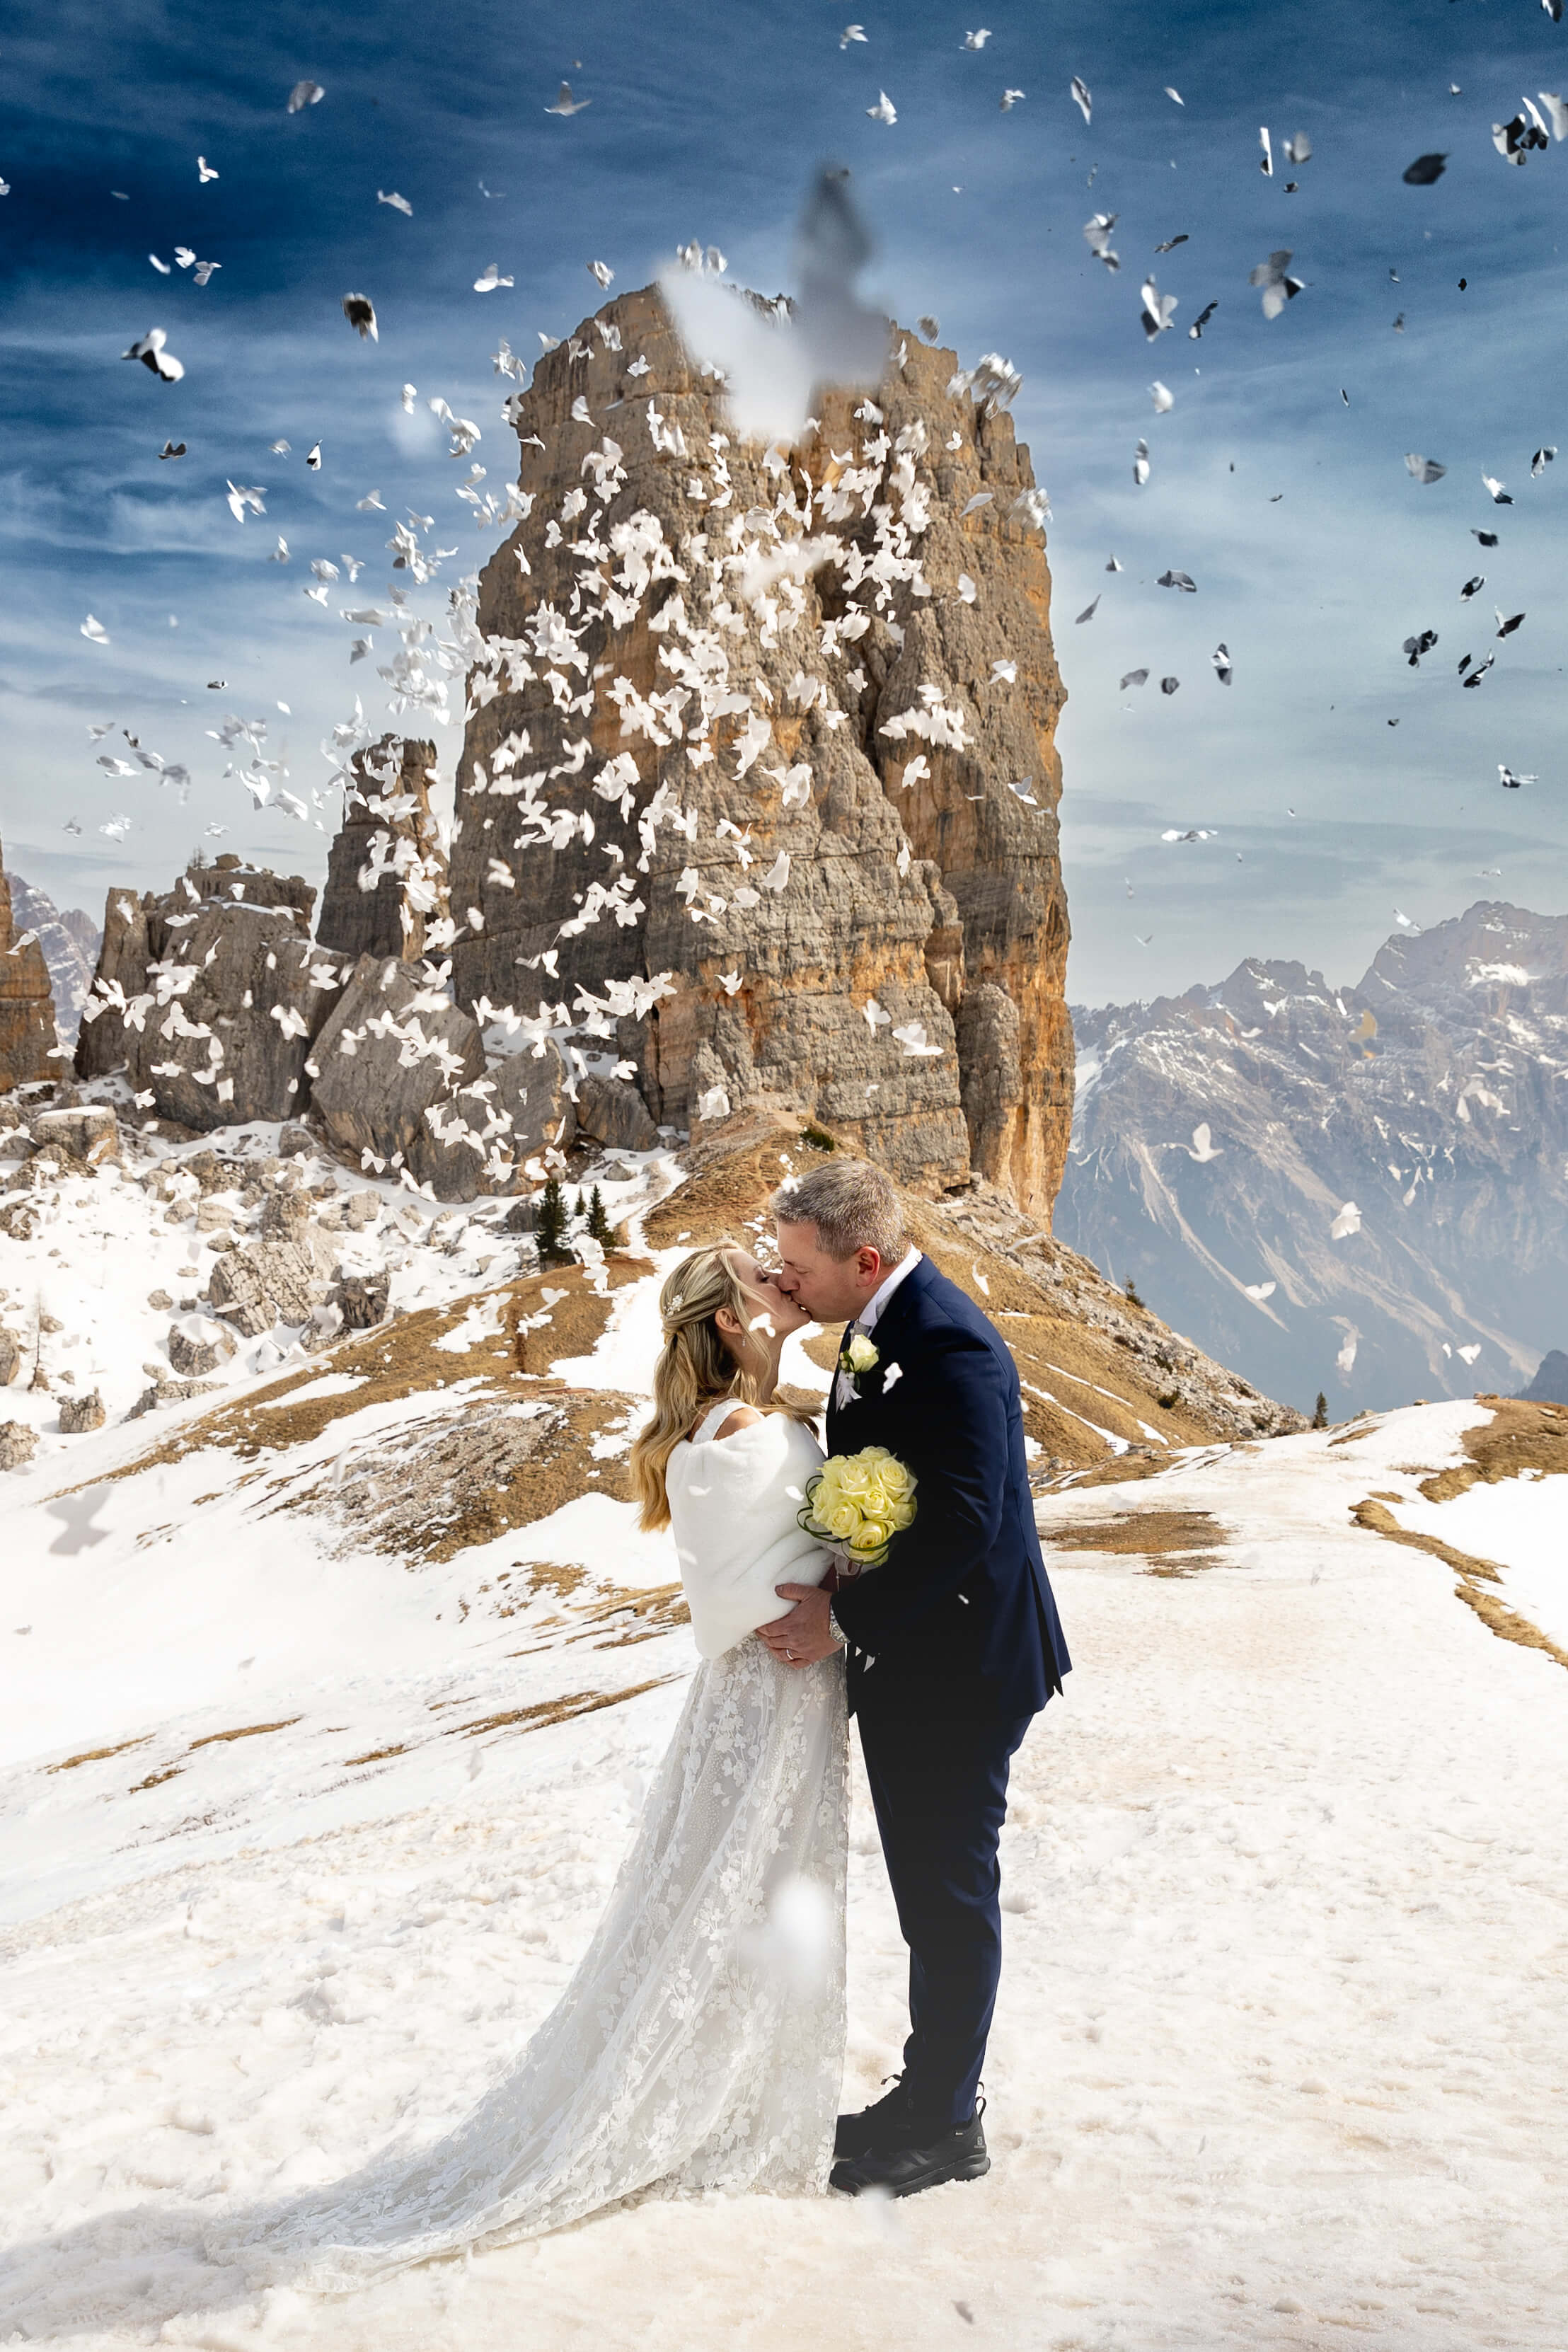 Sposi che si baciano con dietro panorama delle montagne